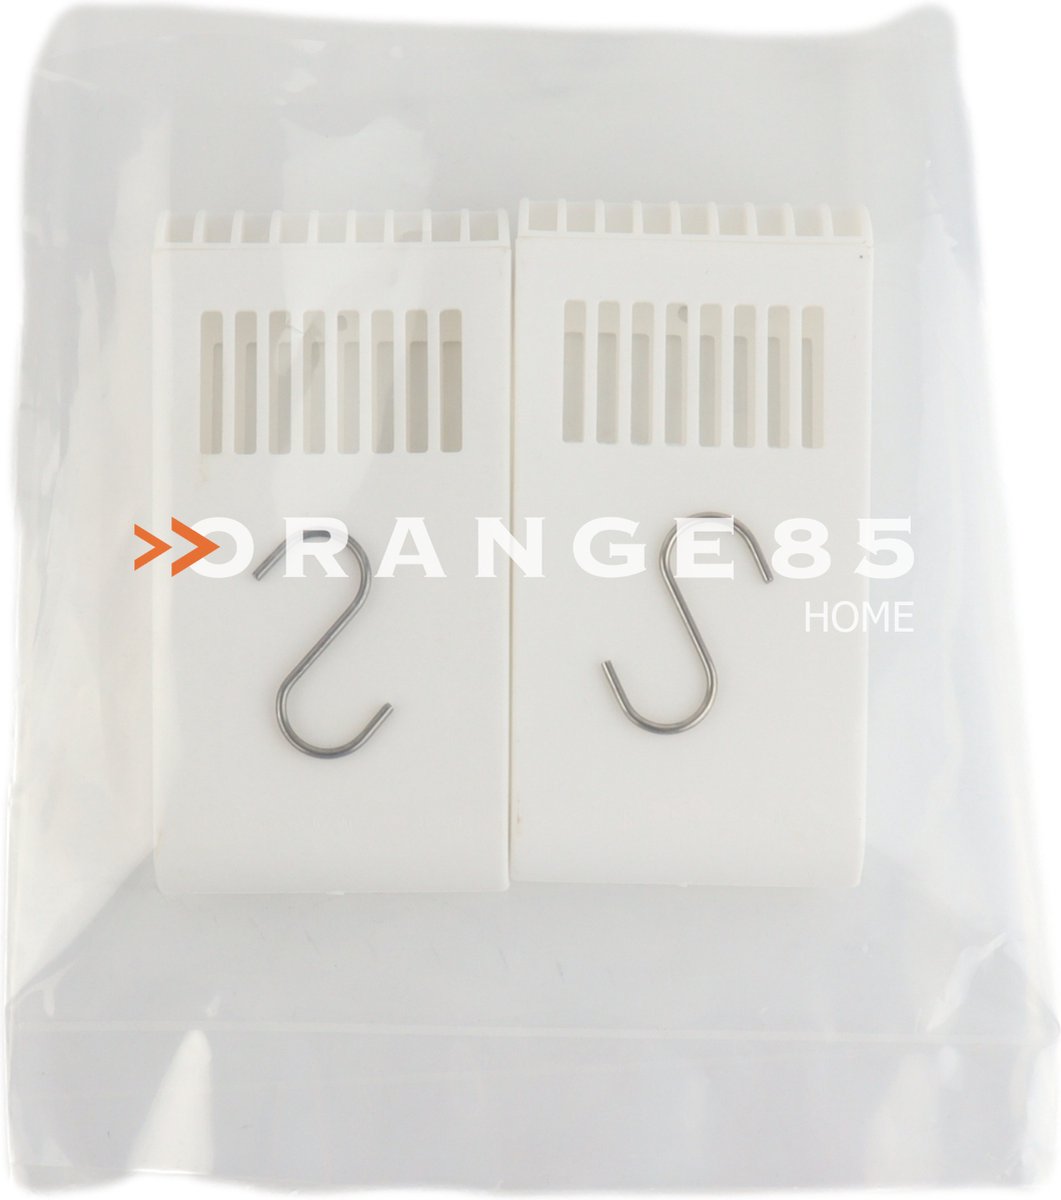 Humidificateur Orange85 - 2 pièces - Radiateur - Plastique - Suspendu